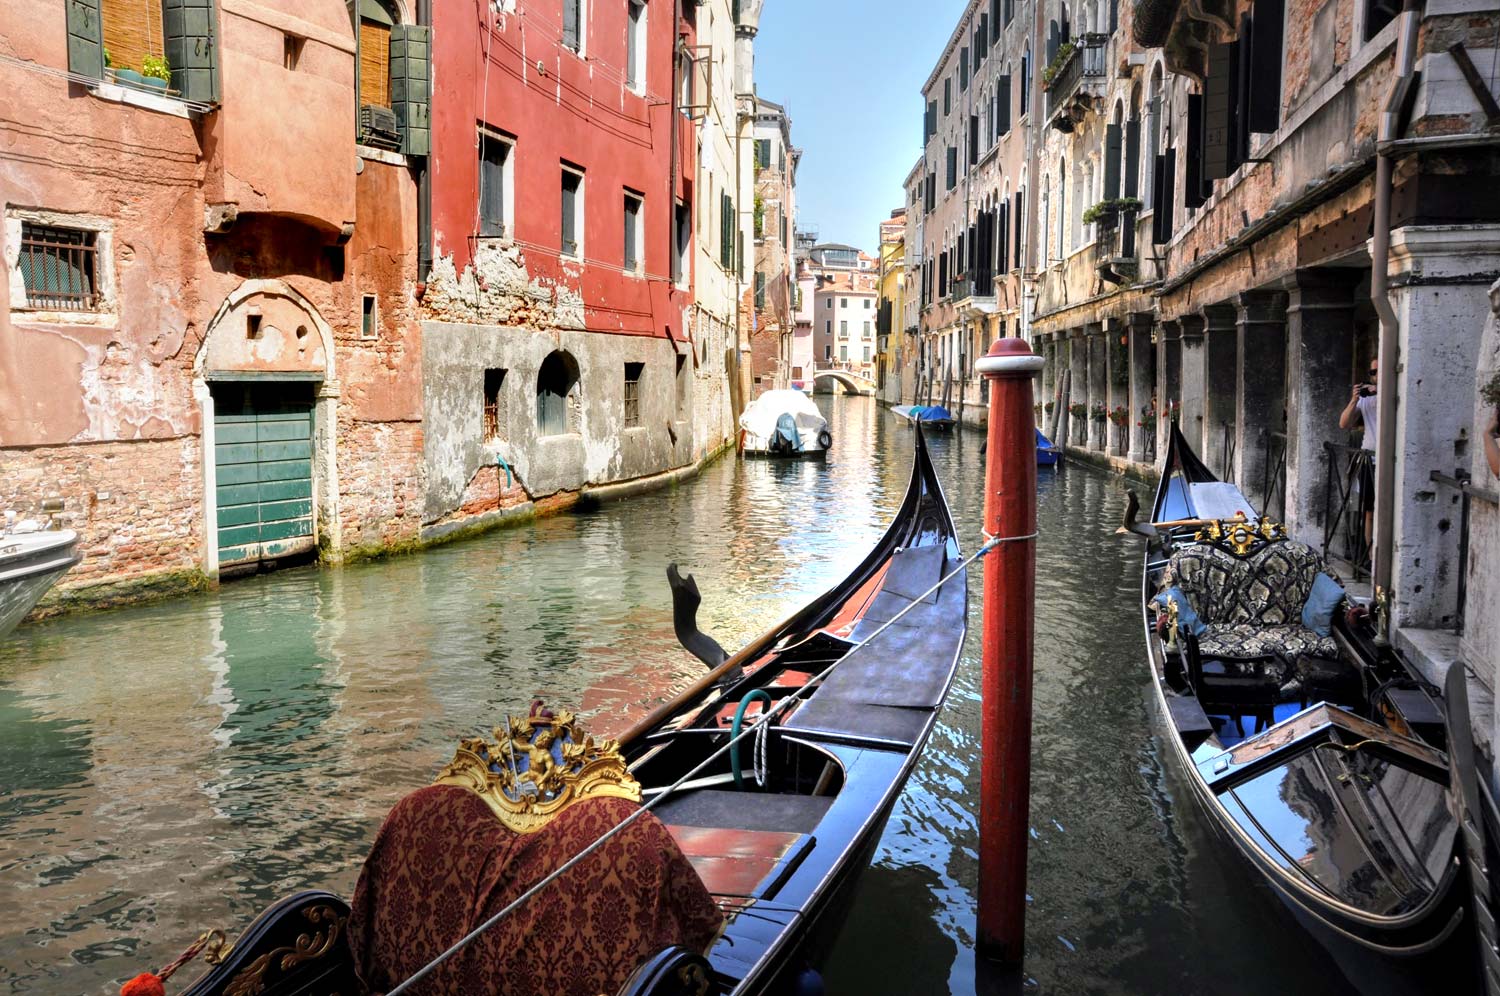 Włochy – gdzie pojechać na wakacje? Top 40 miejsc – najciekawsze, najlepsze, najpiękniejsze! – atrakcje turystyczne, Co zobaczyć? Przewodnik.